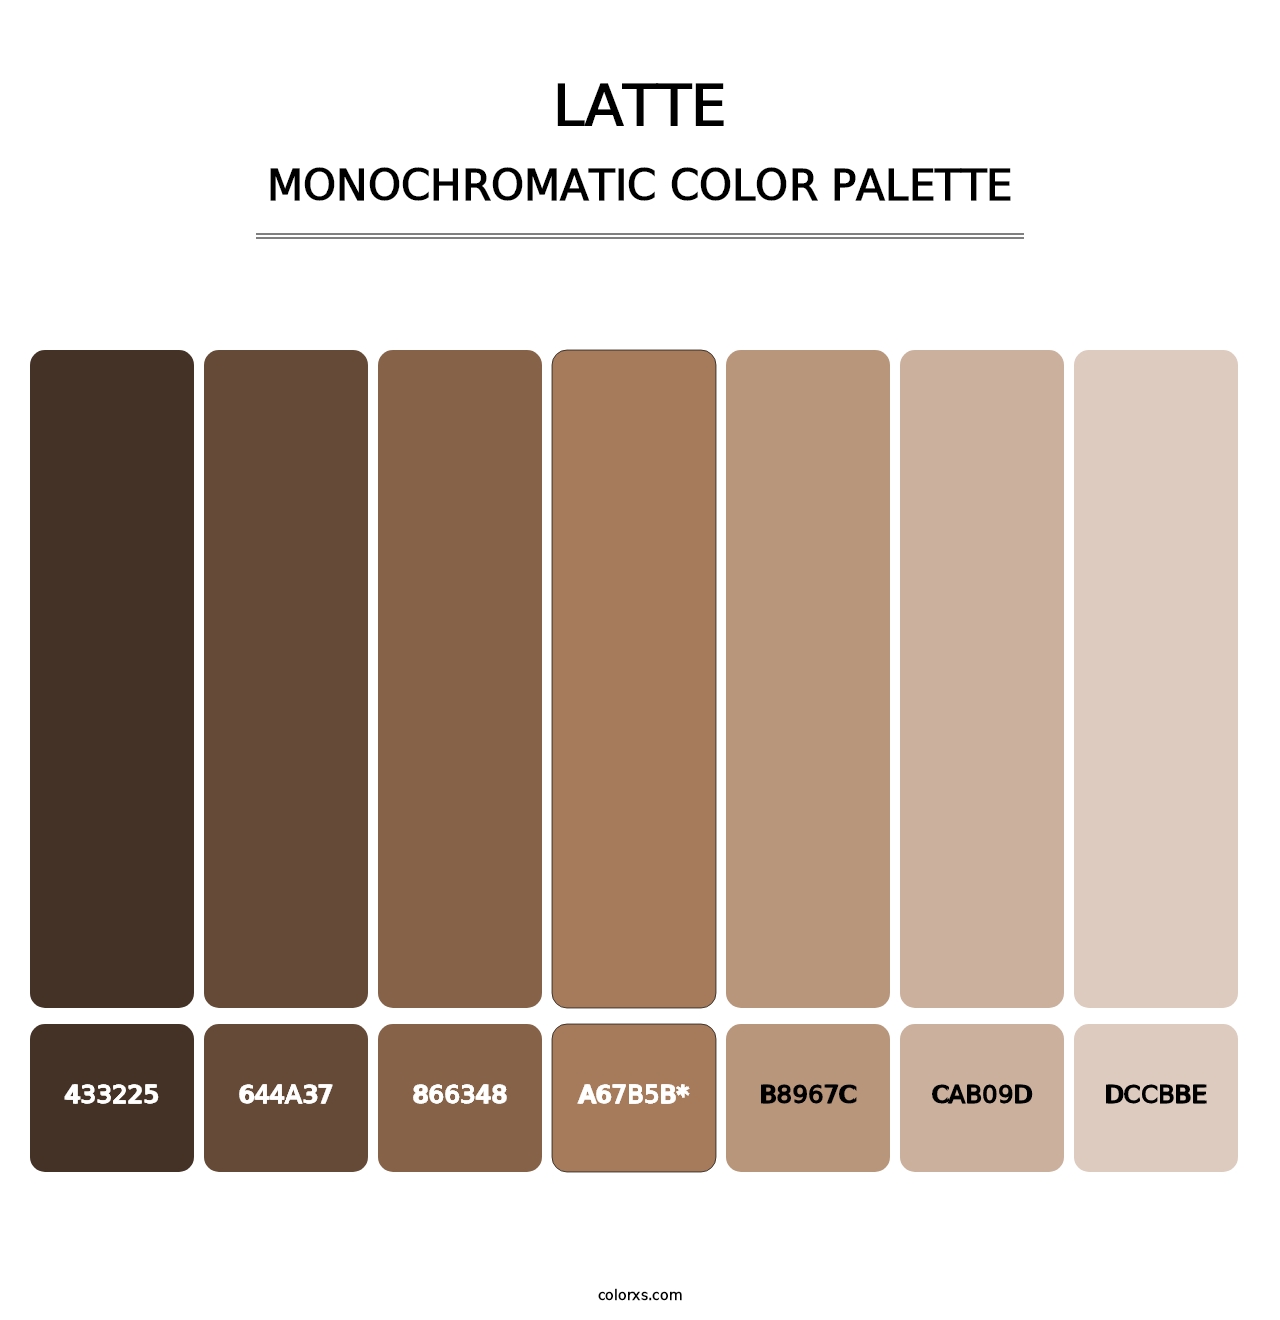 Latte - Monochromatic Color Palette